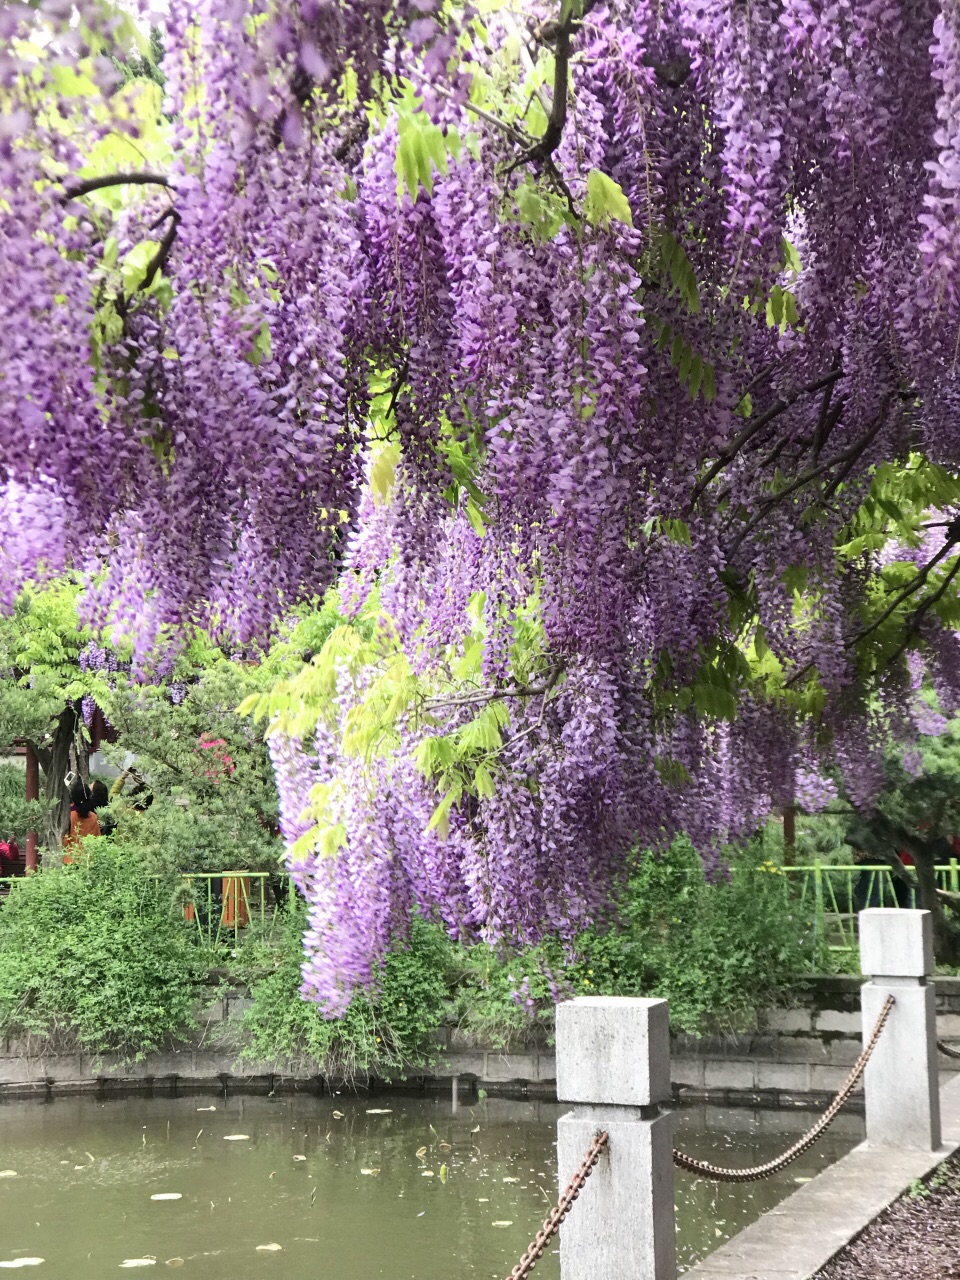 四月中旬的紫藤园,华丽紫色是唯一的主角,品种各异的紫藤花,流苏般的